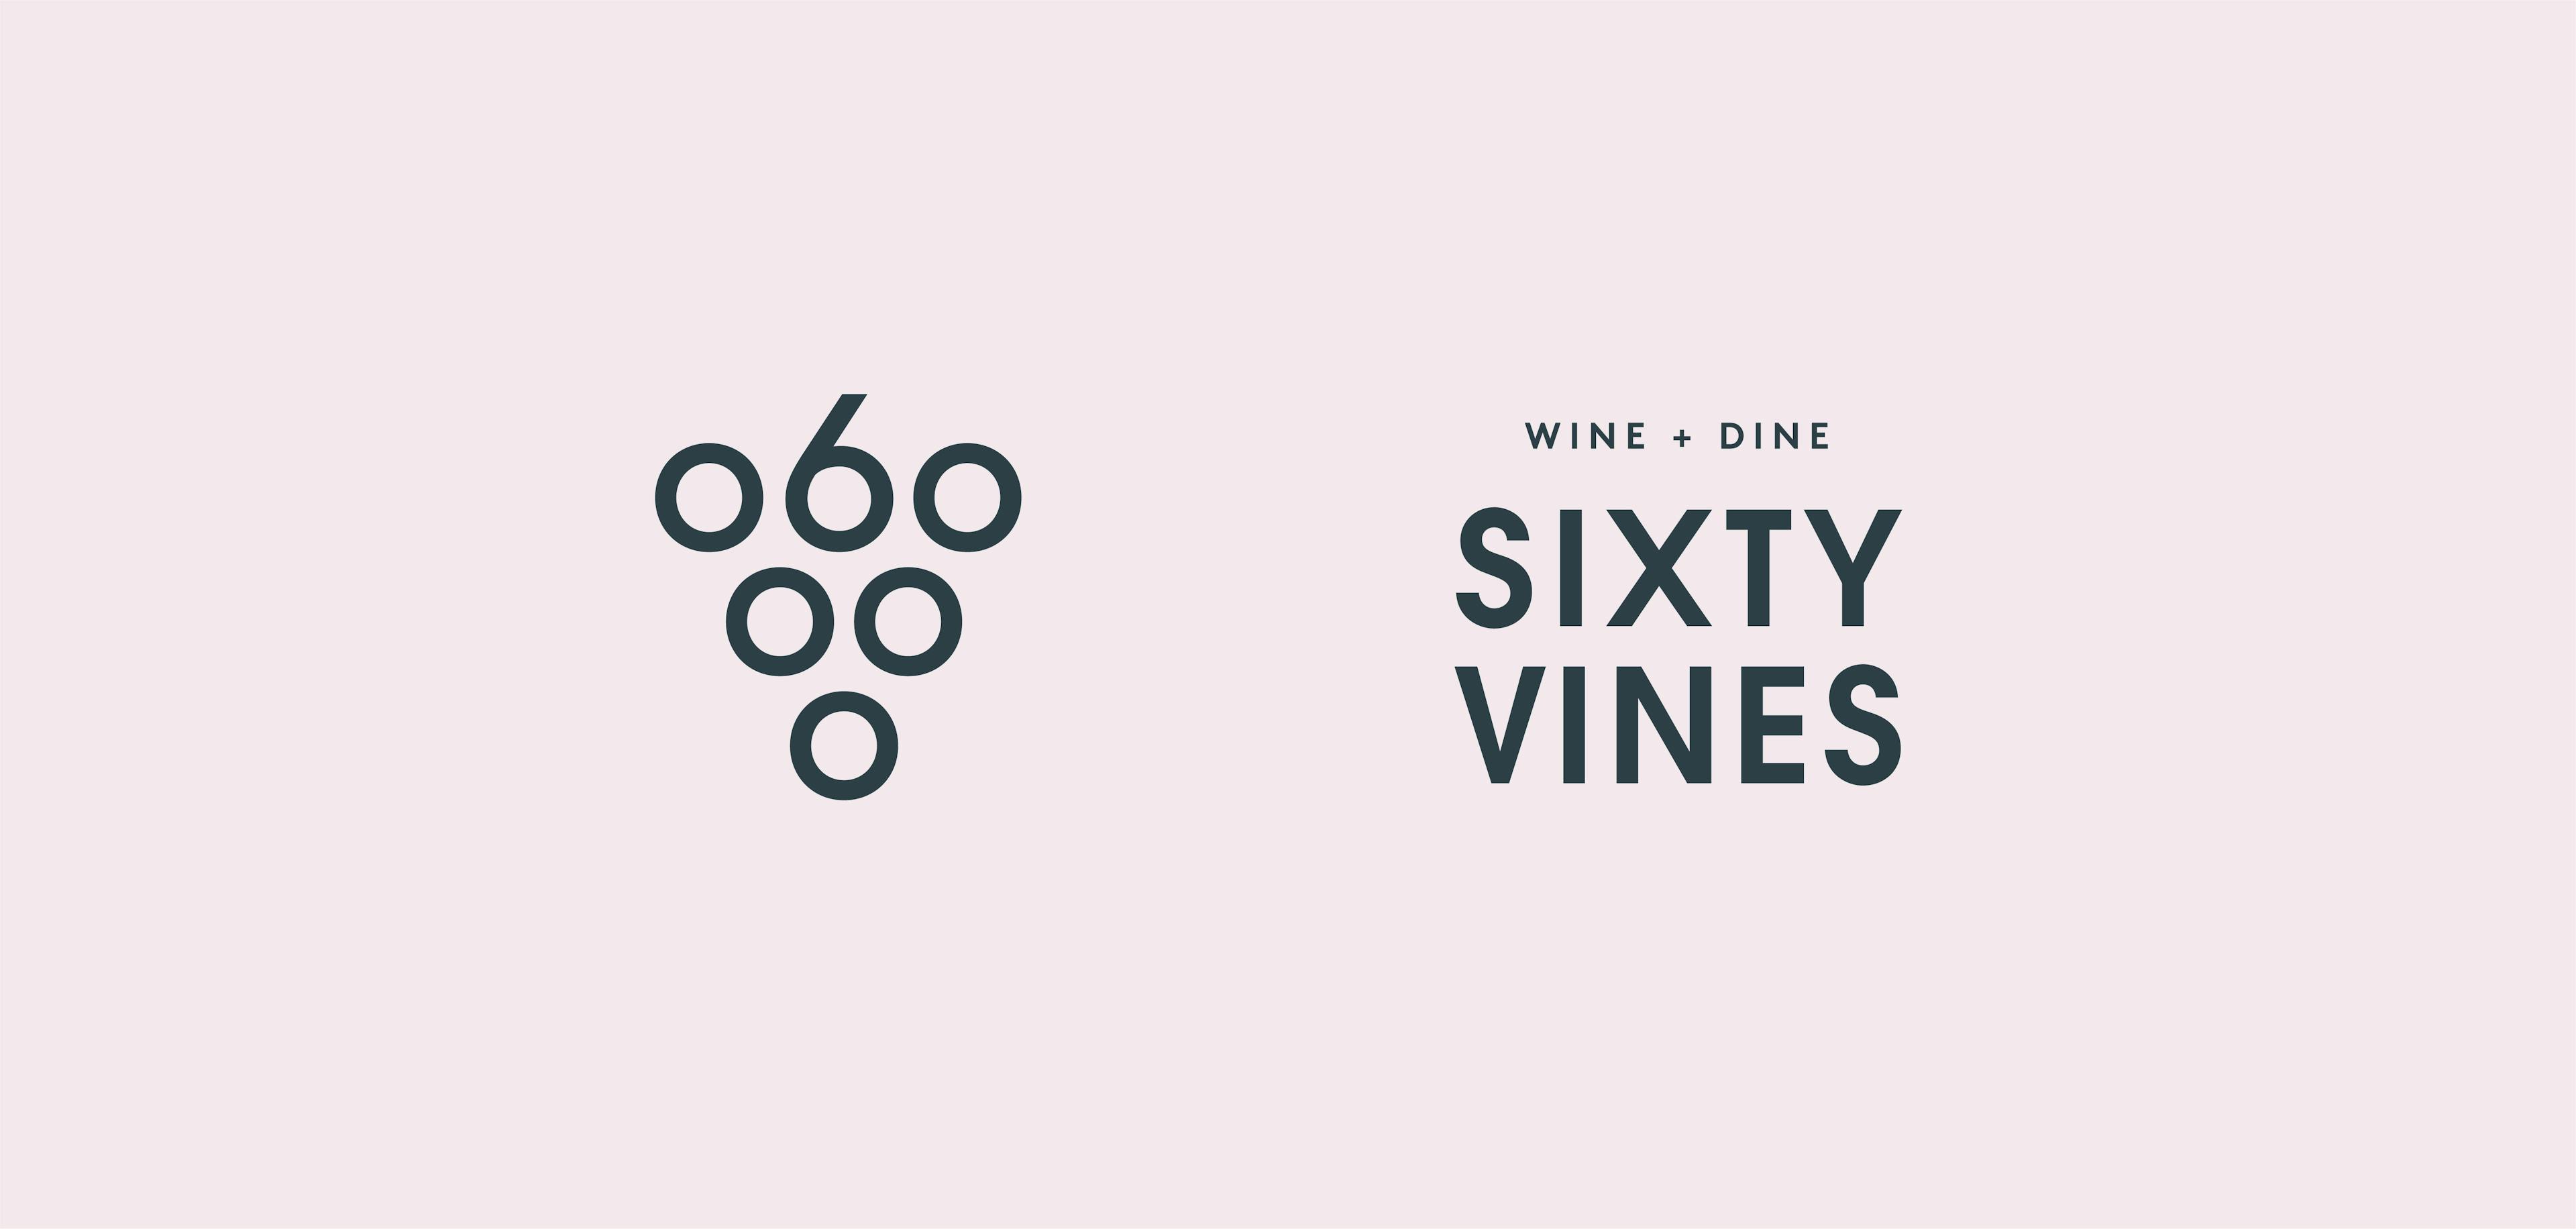 Sixty Vines logos in a dark grey color